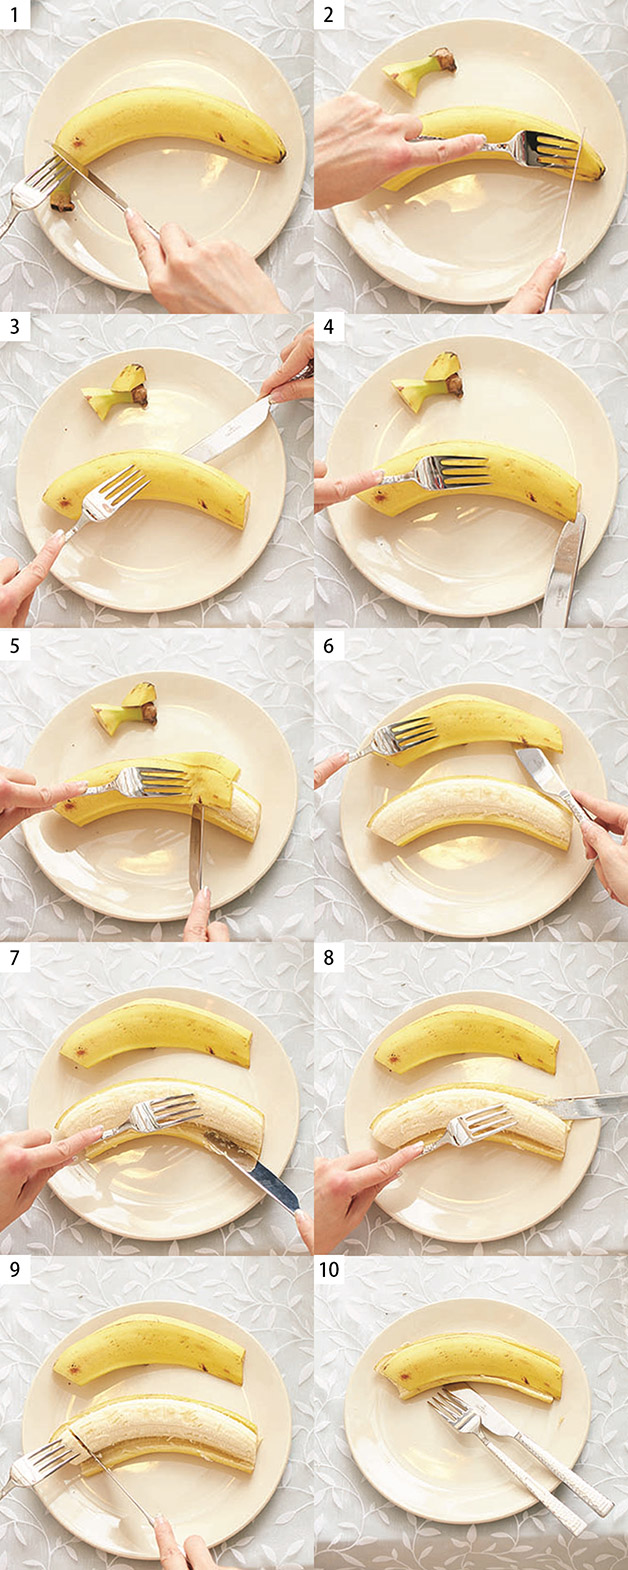 口布花香蕉的折法图解图片